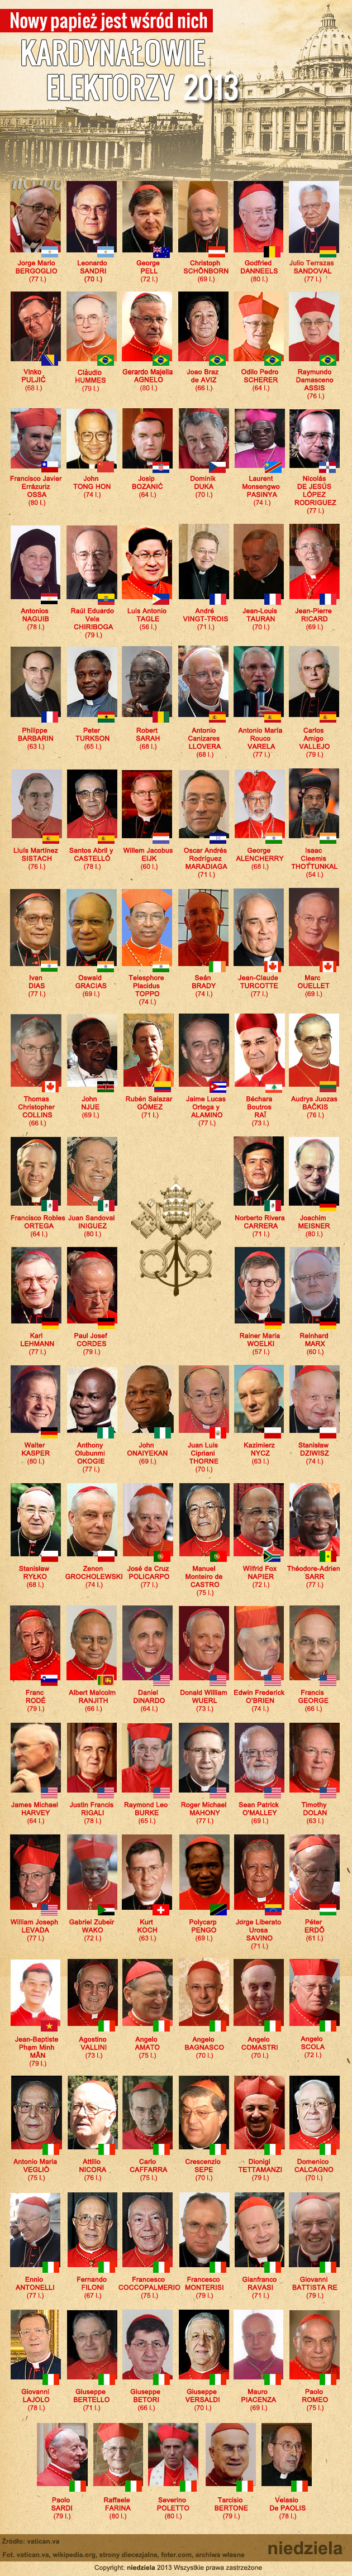 Nowy papież jest wśród nich. Kardynałowie elektorzy 2013.